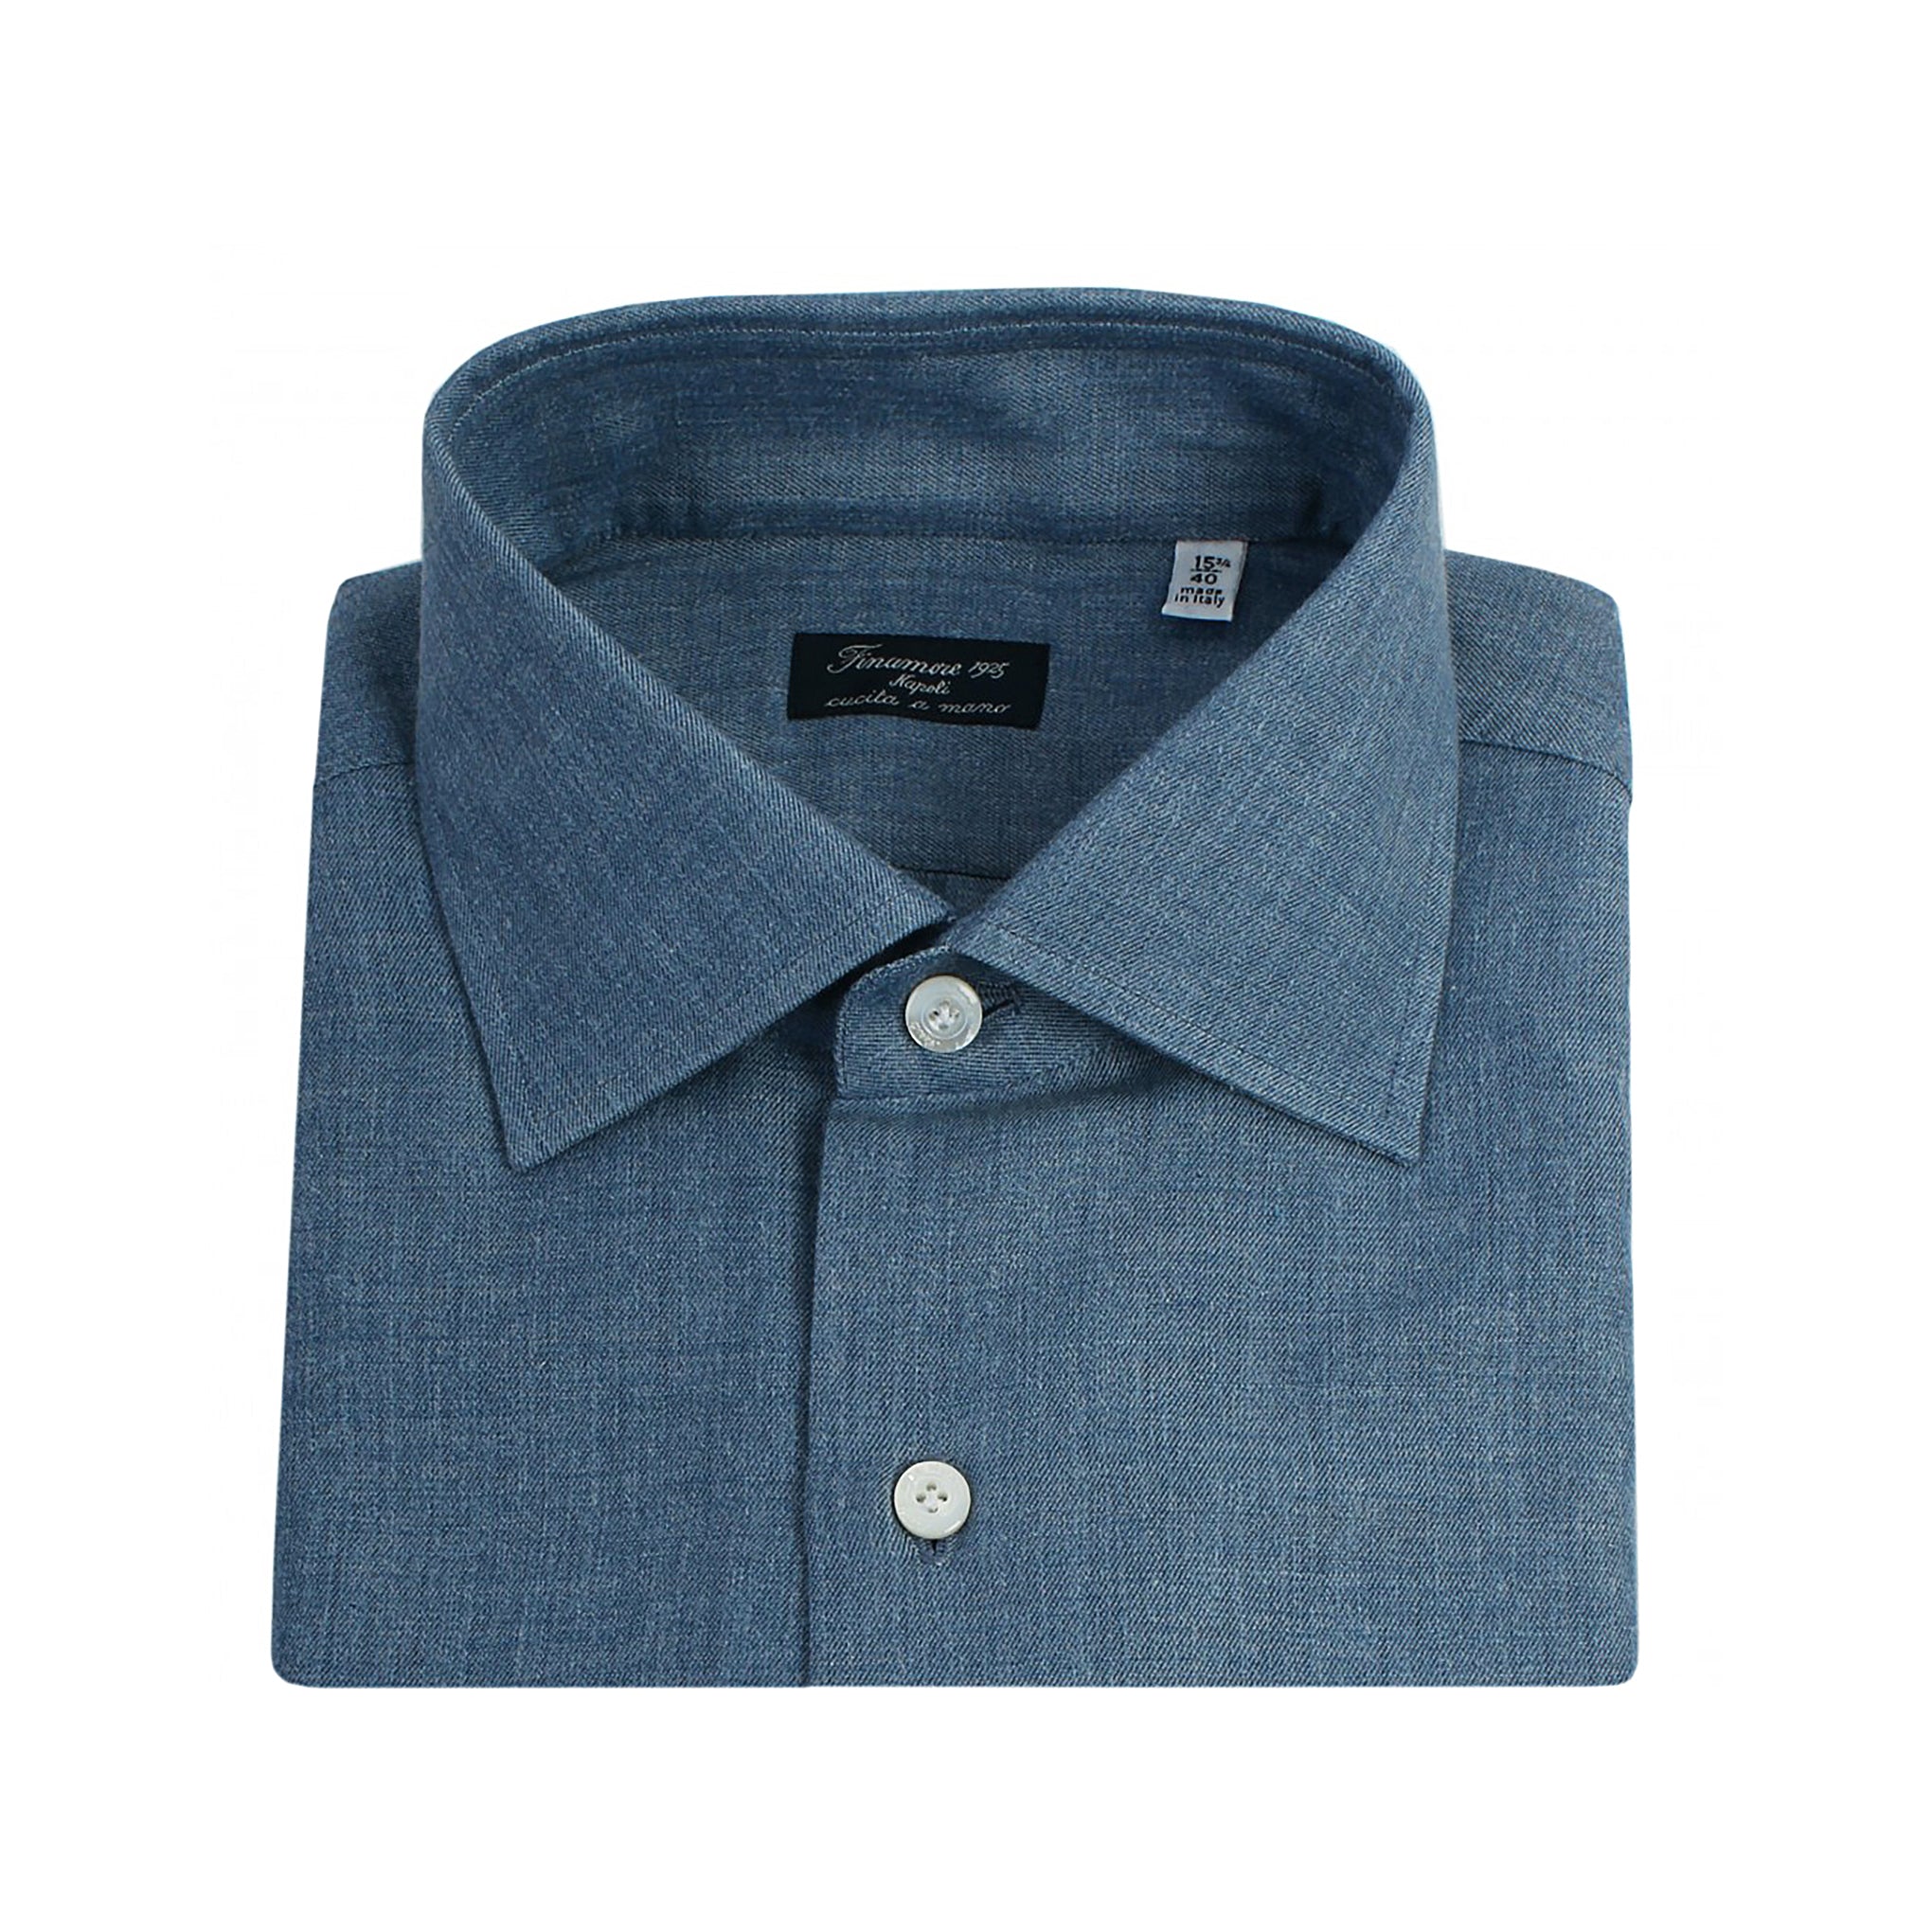 Camicia Napoli classica regular cashmere cotone blu Finamore 1925